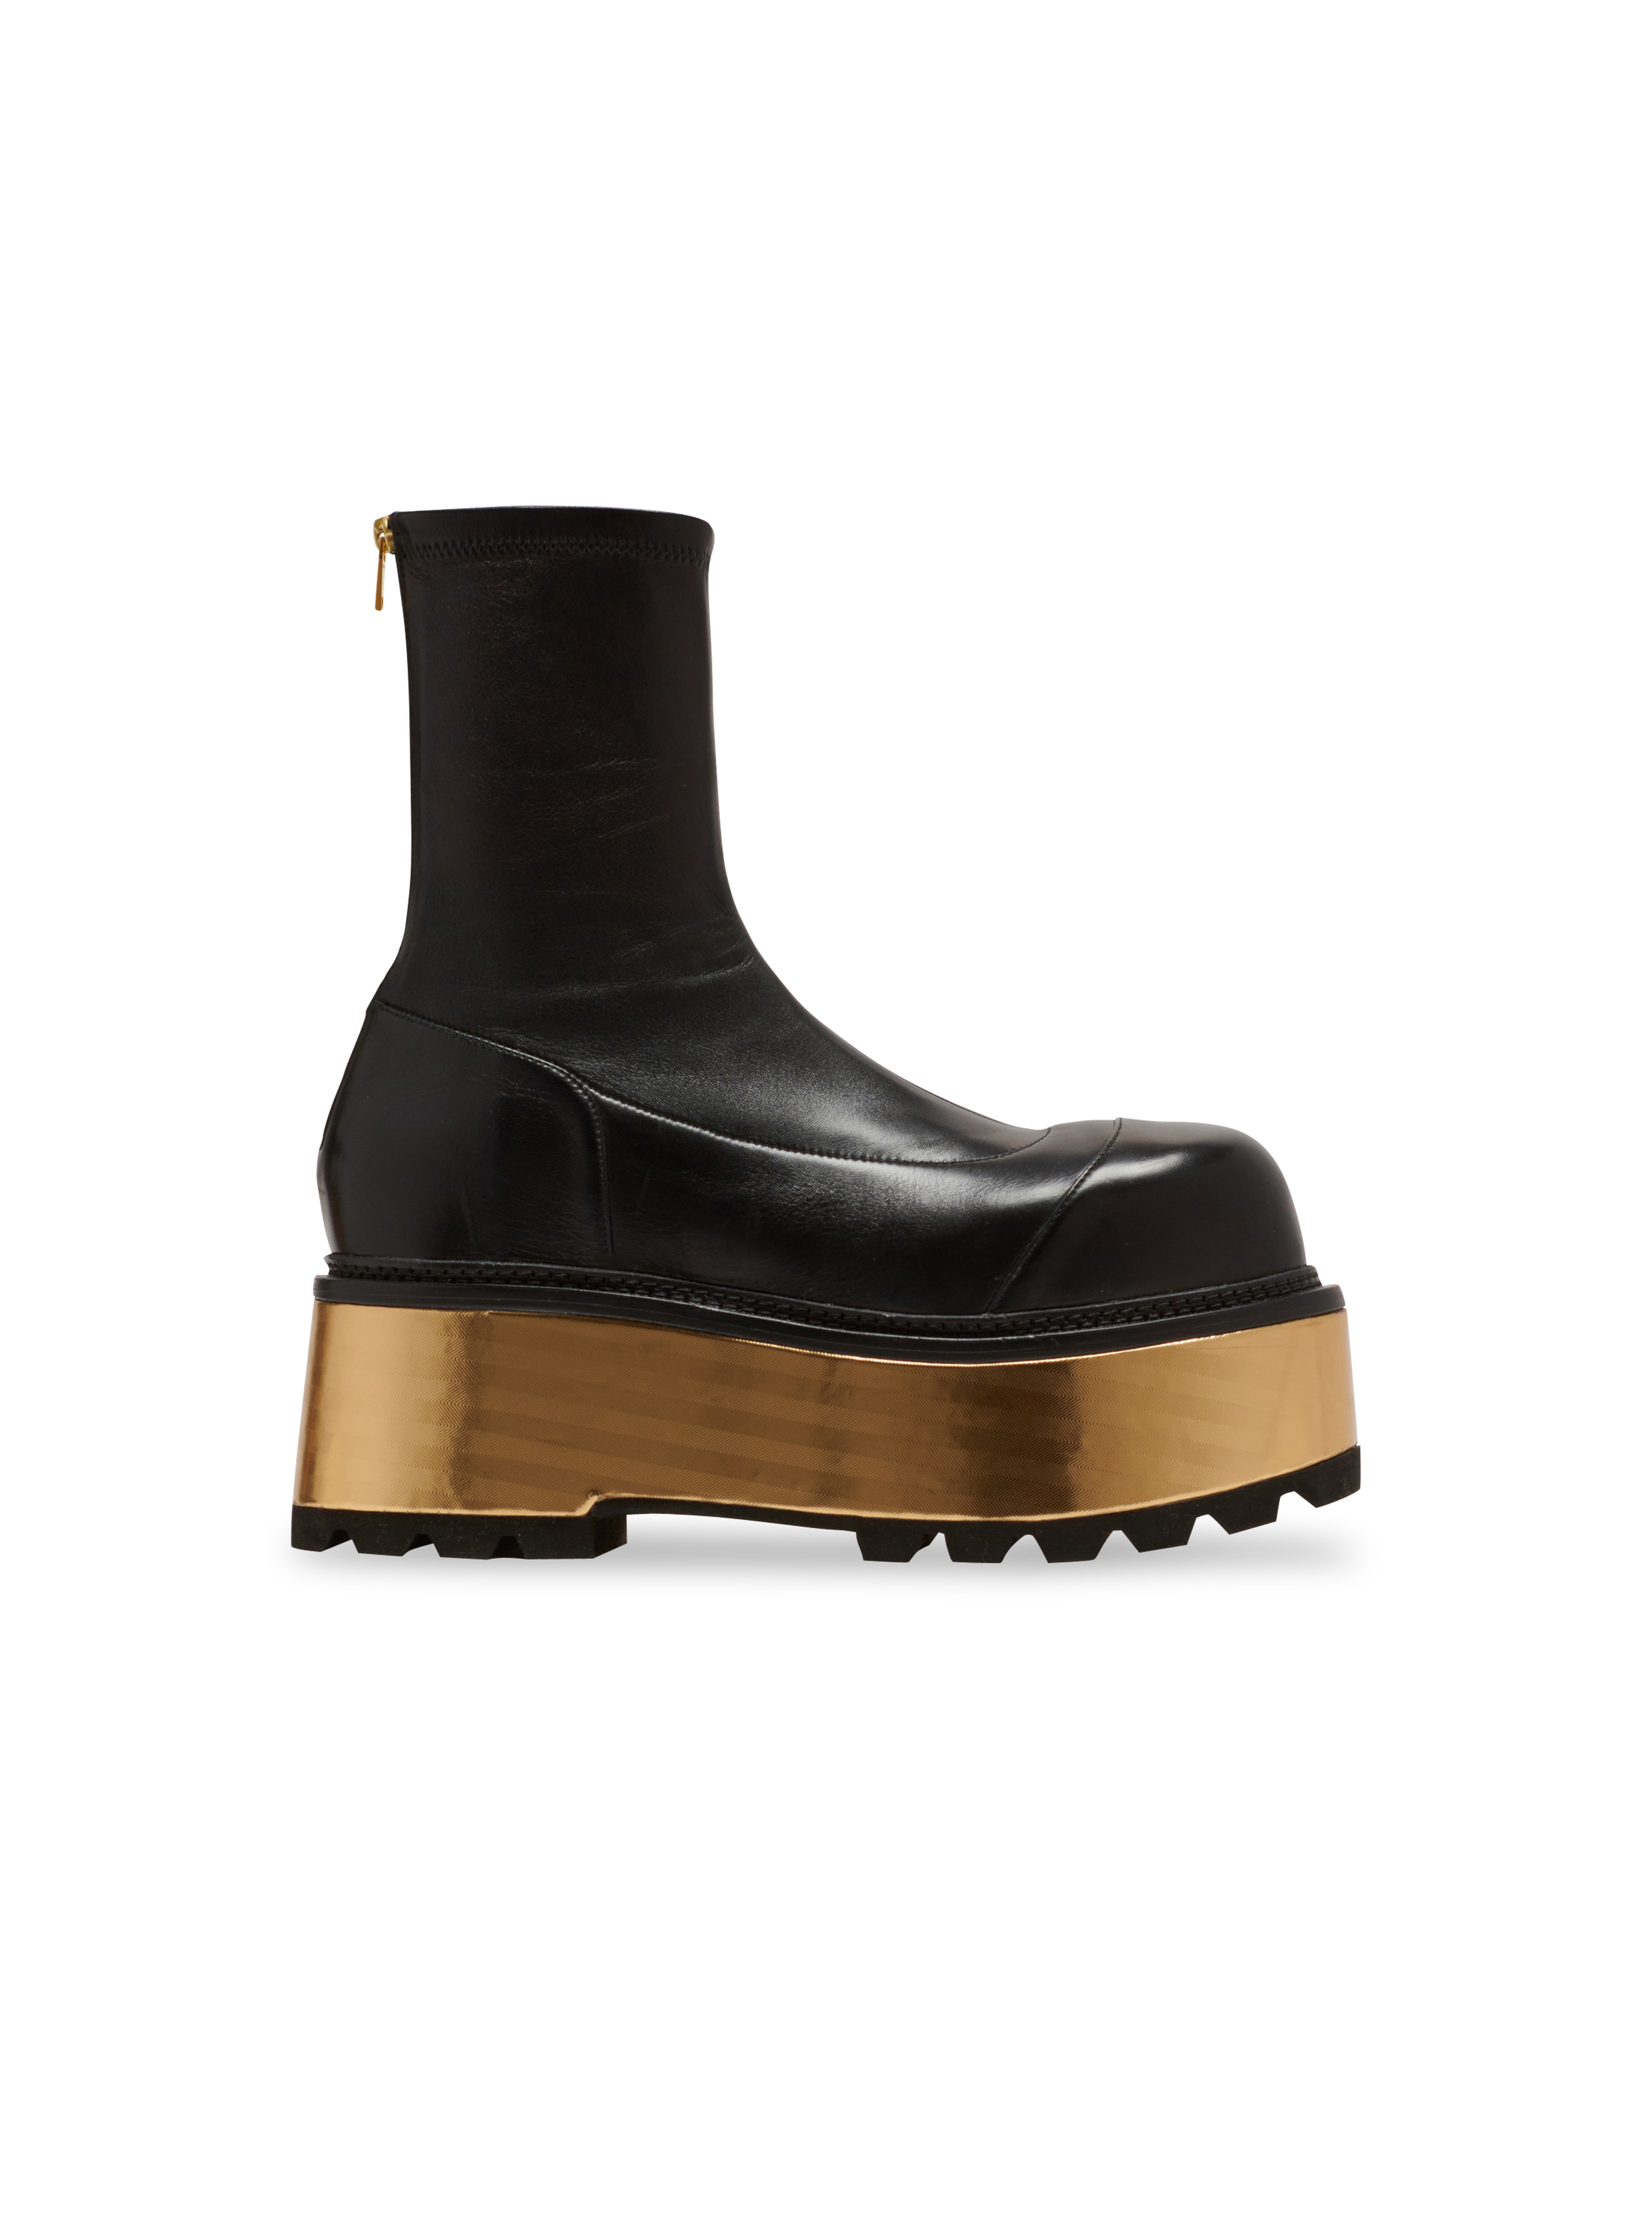 Leather platform boots, black